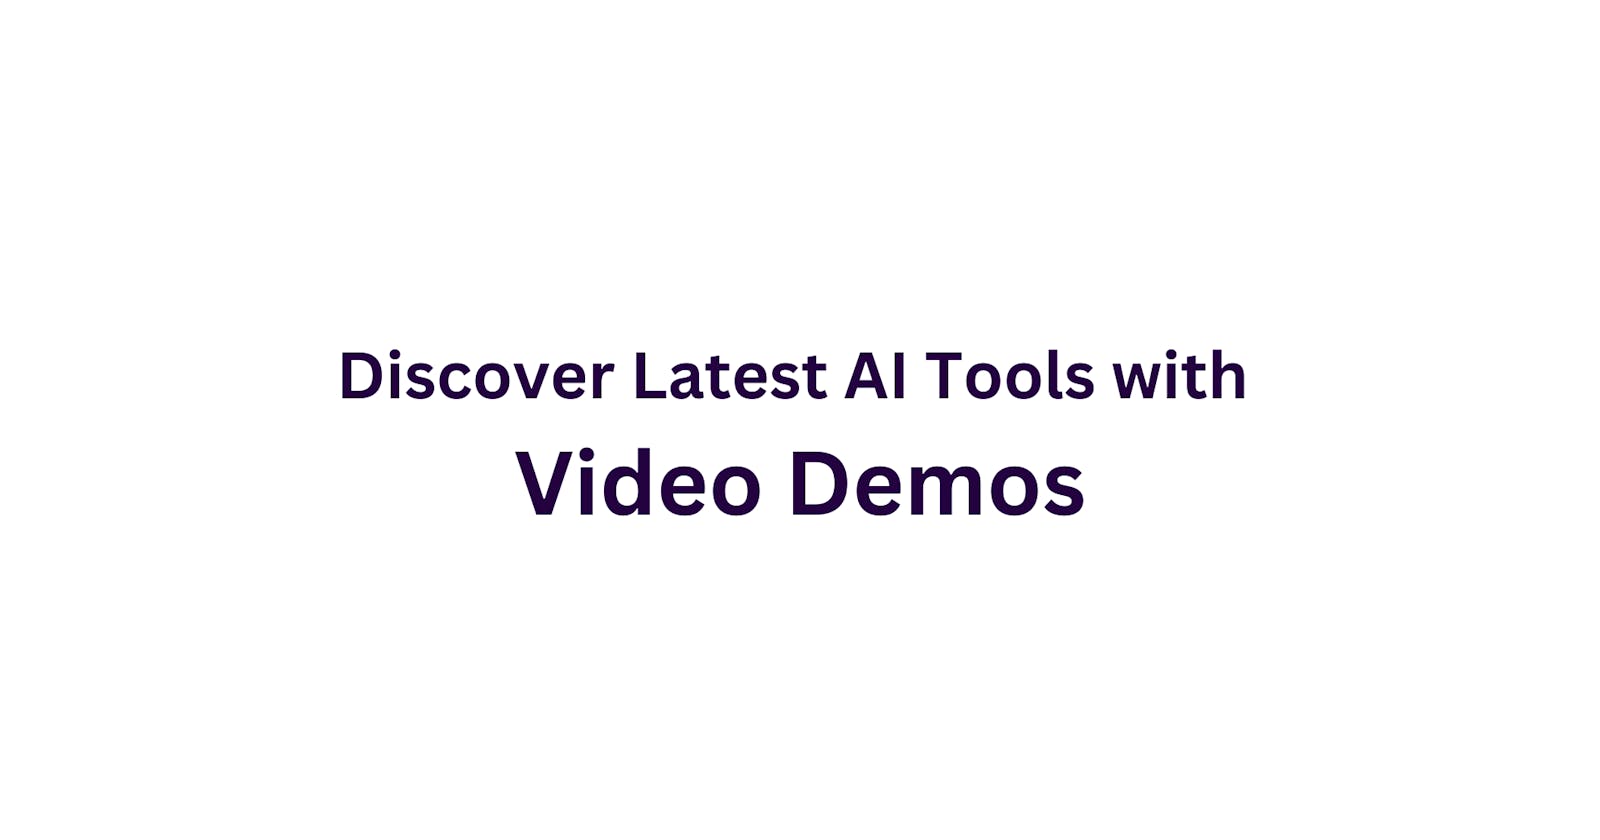 Explore Over 20+ AI Tools with Video Demos on AIDemos.com.